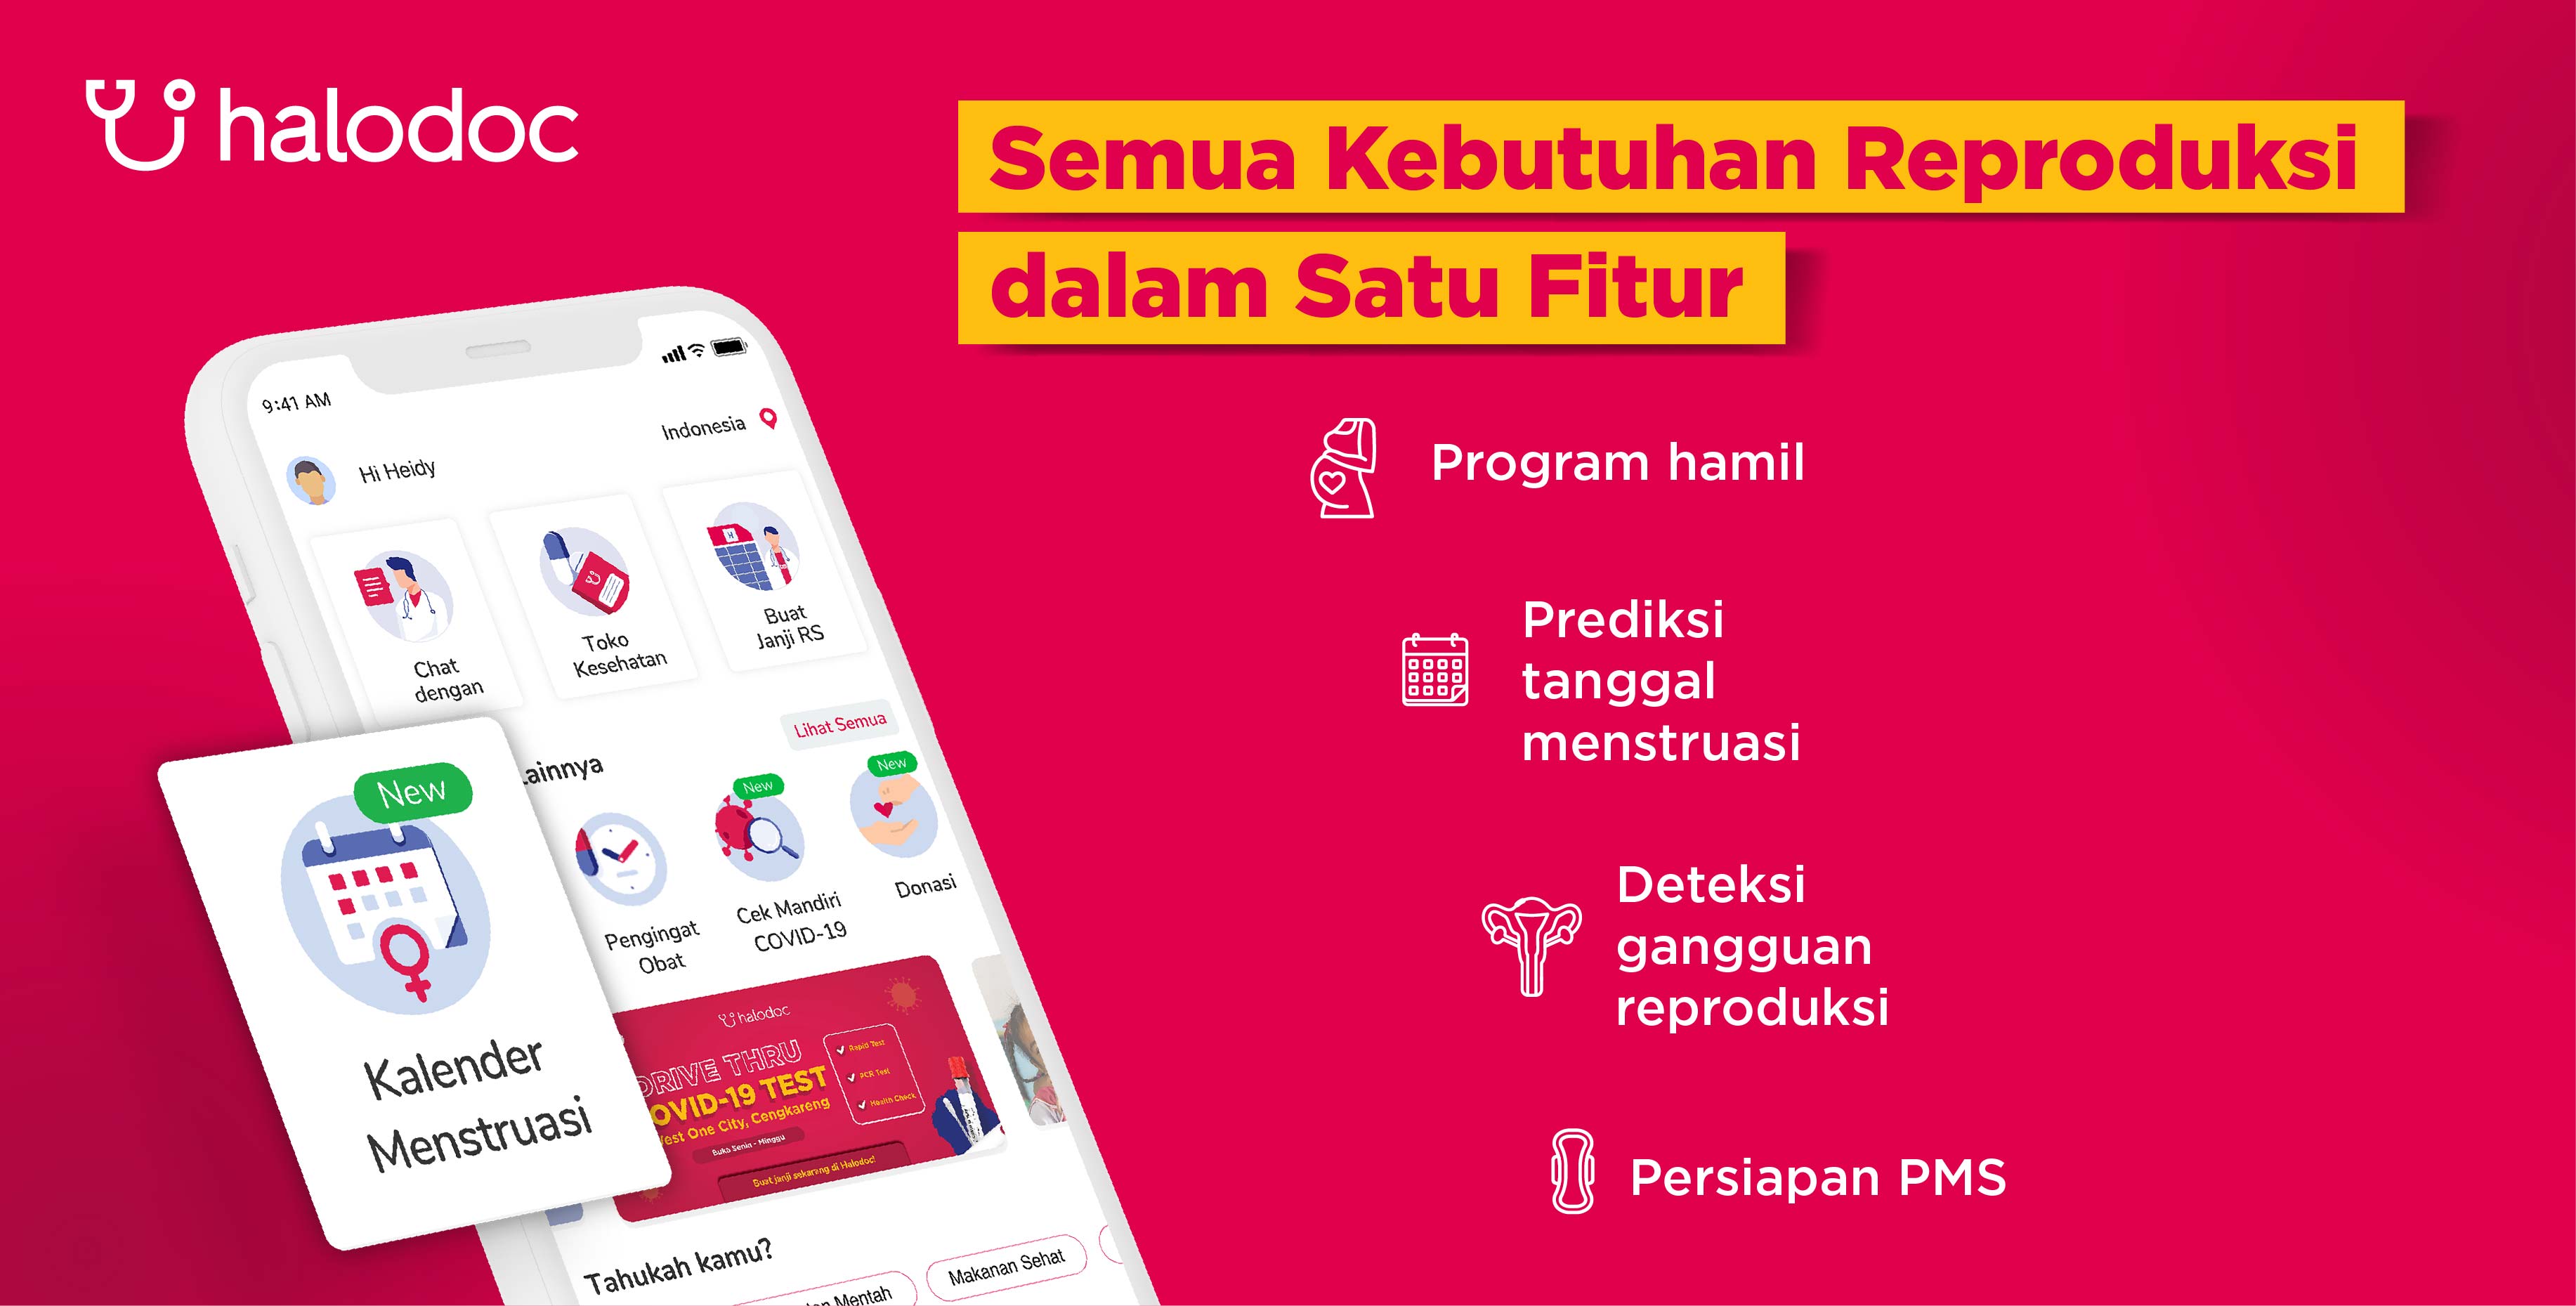 Släpper menstruationskalenderfunktionen, blir den mest kompletta hälsoapplikationen i Indonesien